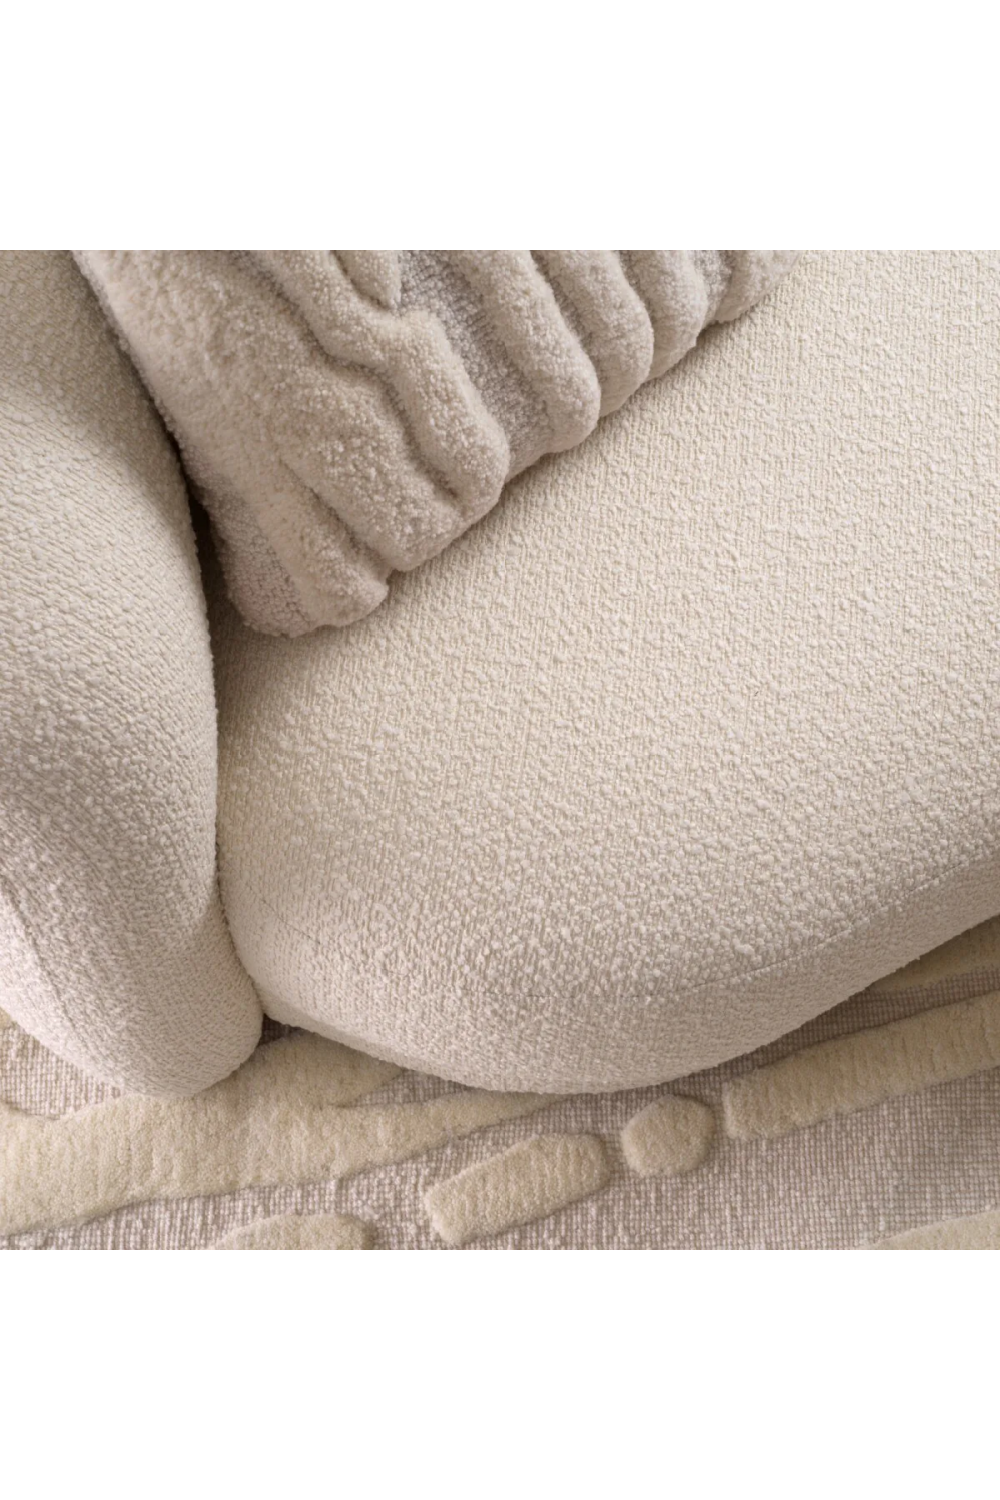 White Woven Wool Cushion | Eichholtz Zenon | Oroa.com